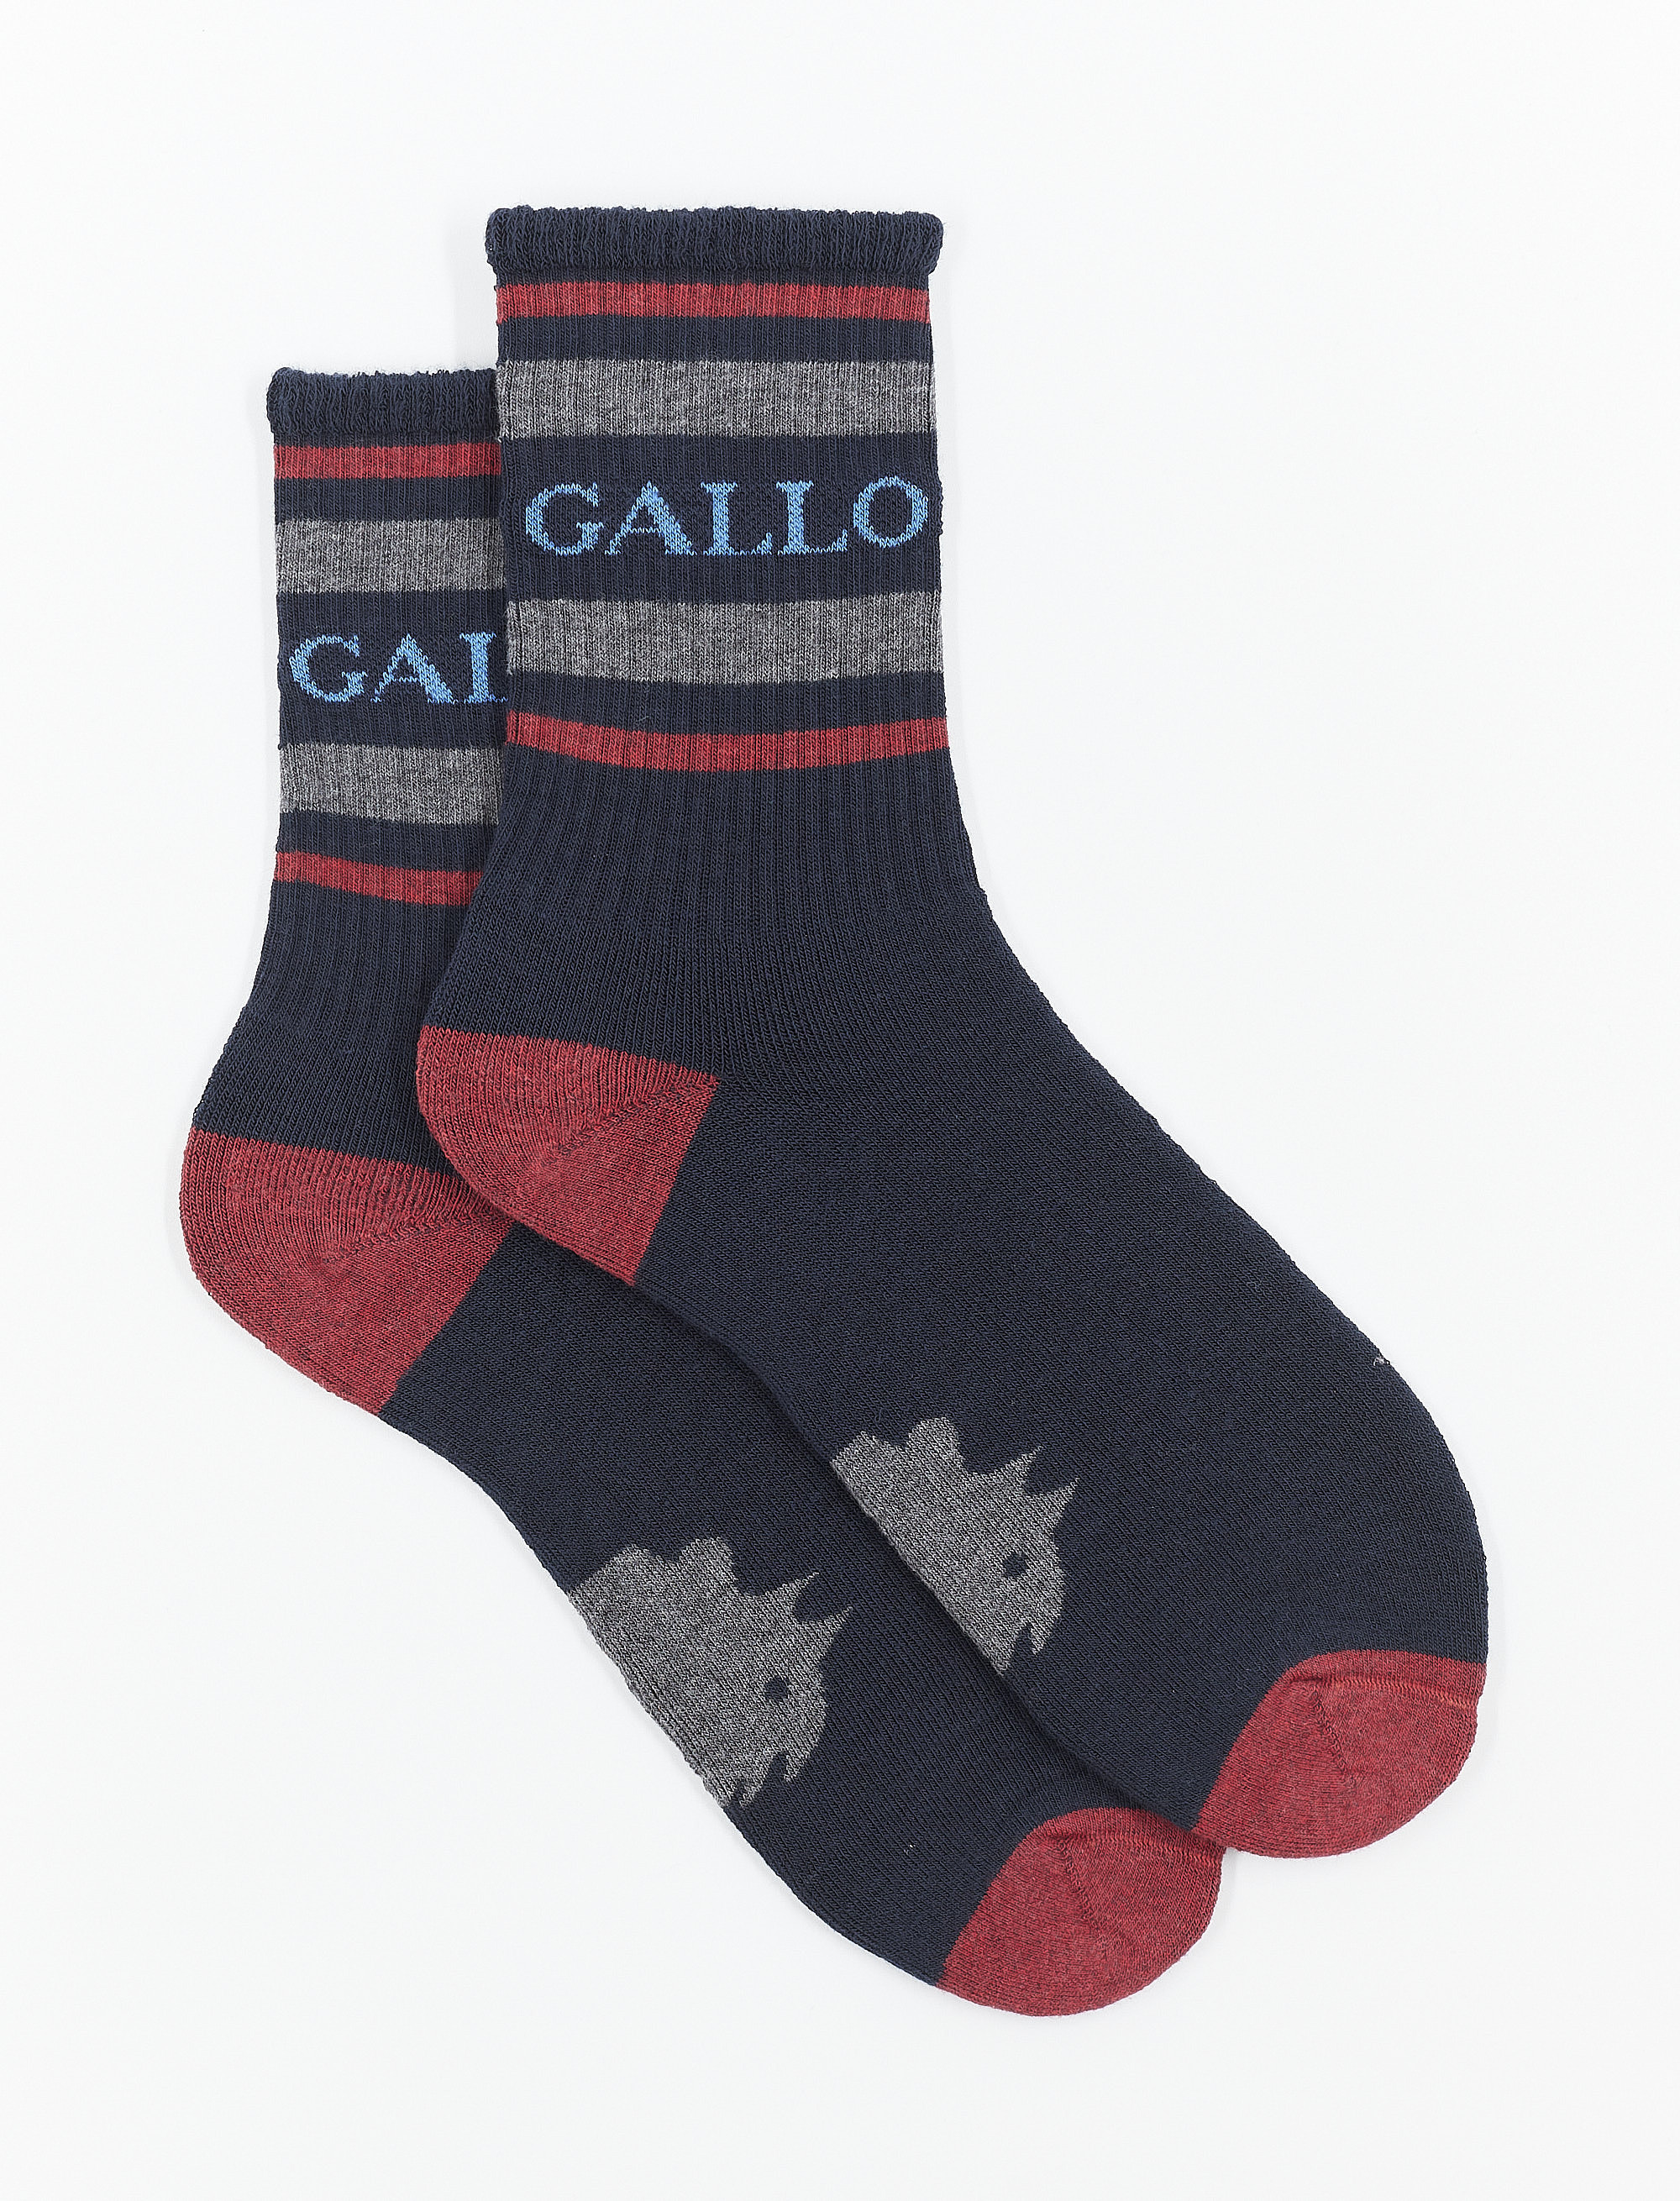 Calze corte donna spugna di cotone blu navy con scritta gallo | Gallo 1927 - Official Online Shop